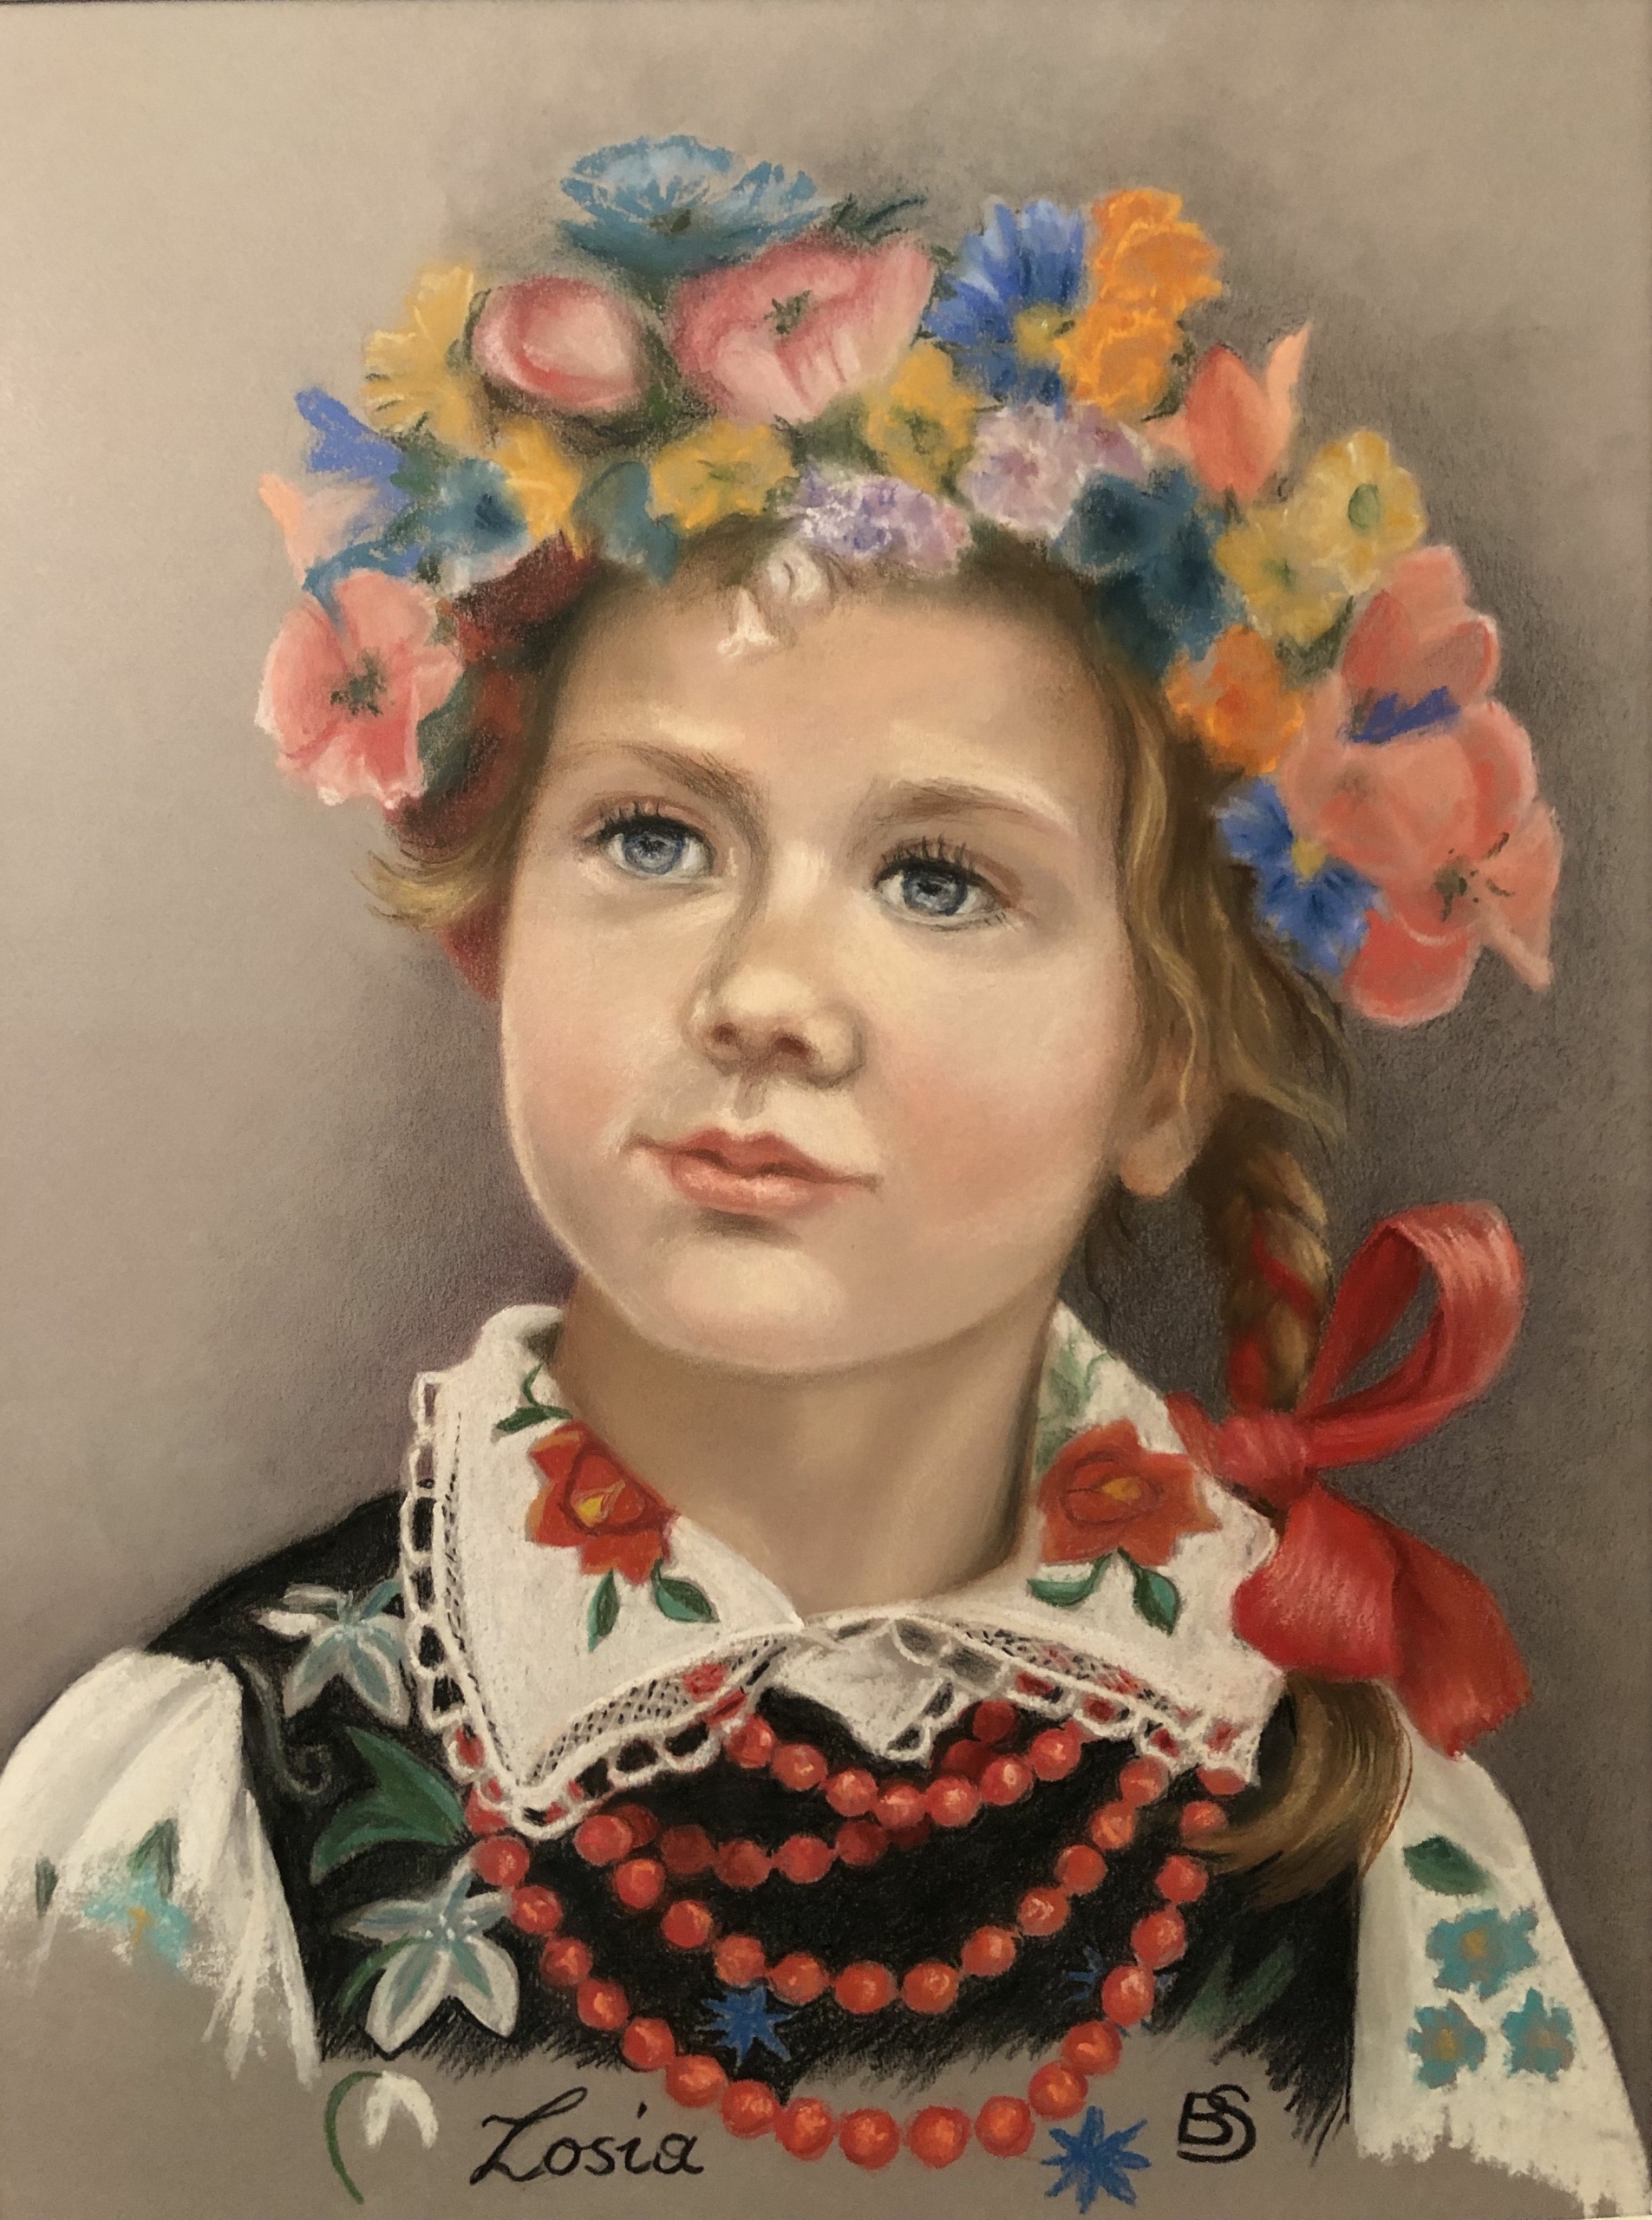 Bé gái Nam Âu trong trang phục truyền thống, tranh của họa sĩ Barbara Schafer. Tranh phấn màu. (Ảnh: Đăng dưới sự cho phép của bà Barbara Schafer)